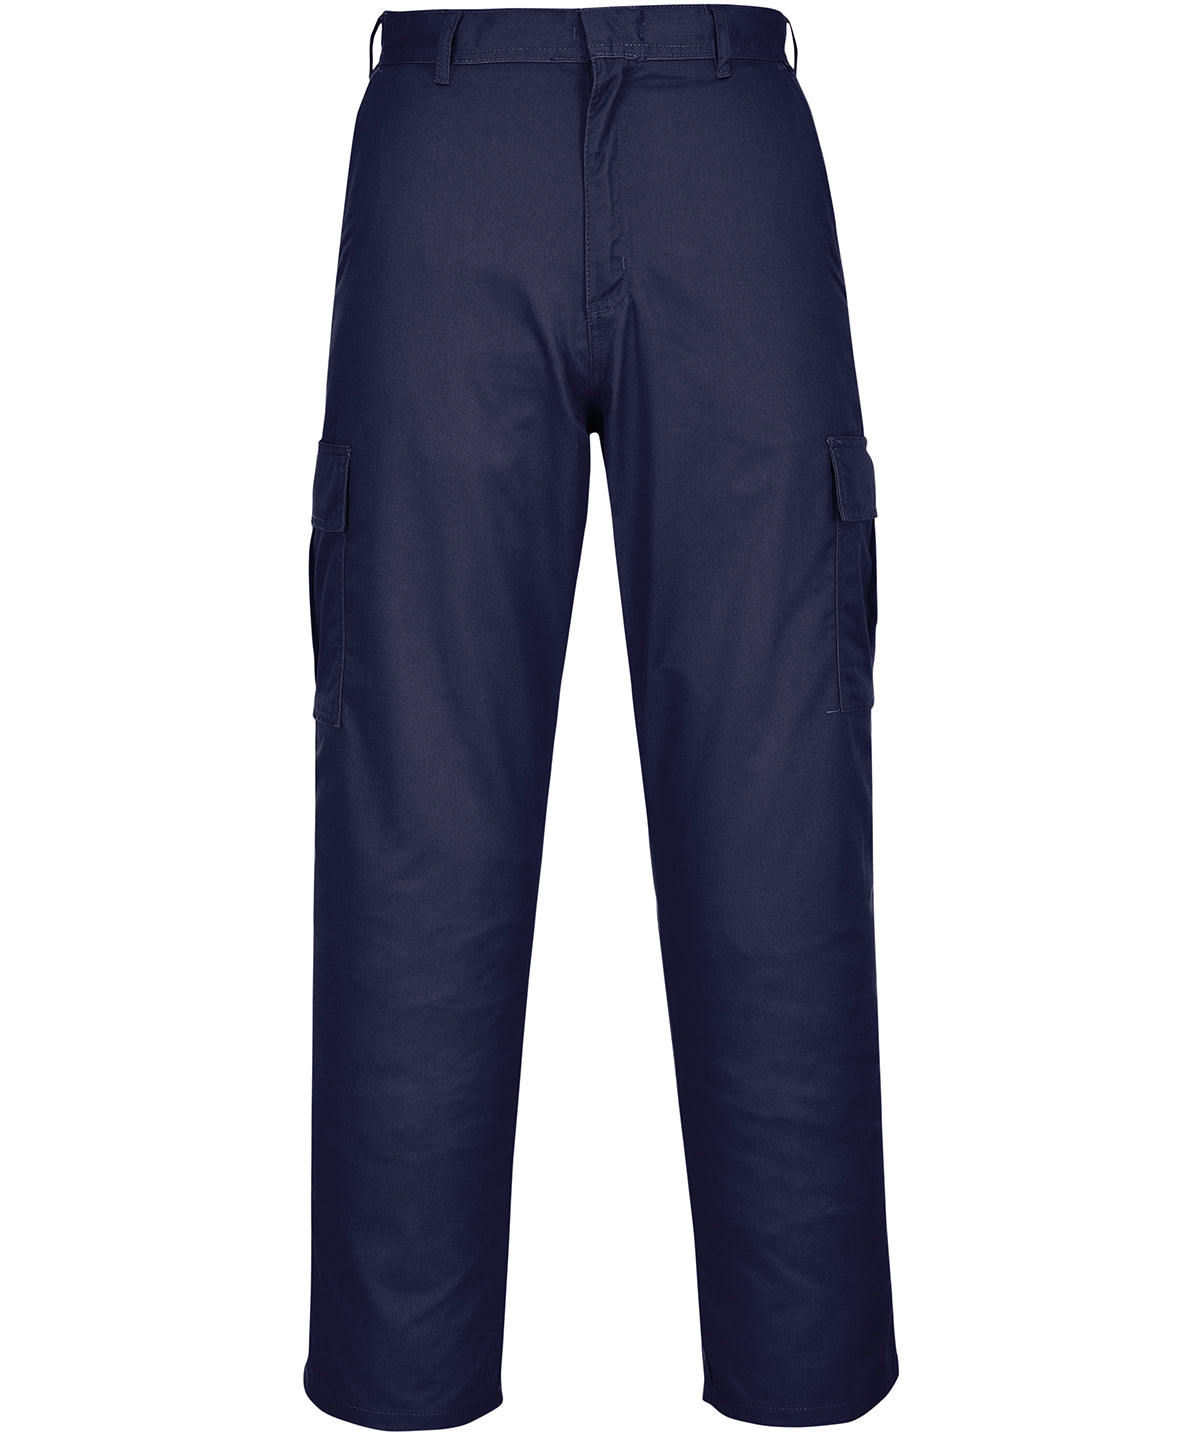 Combat trousers (C701)